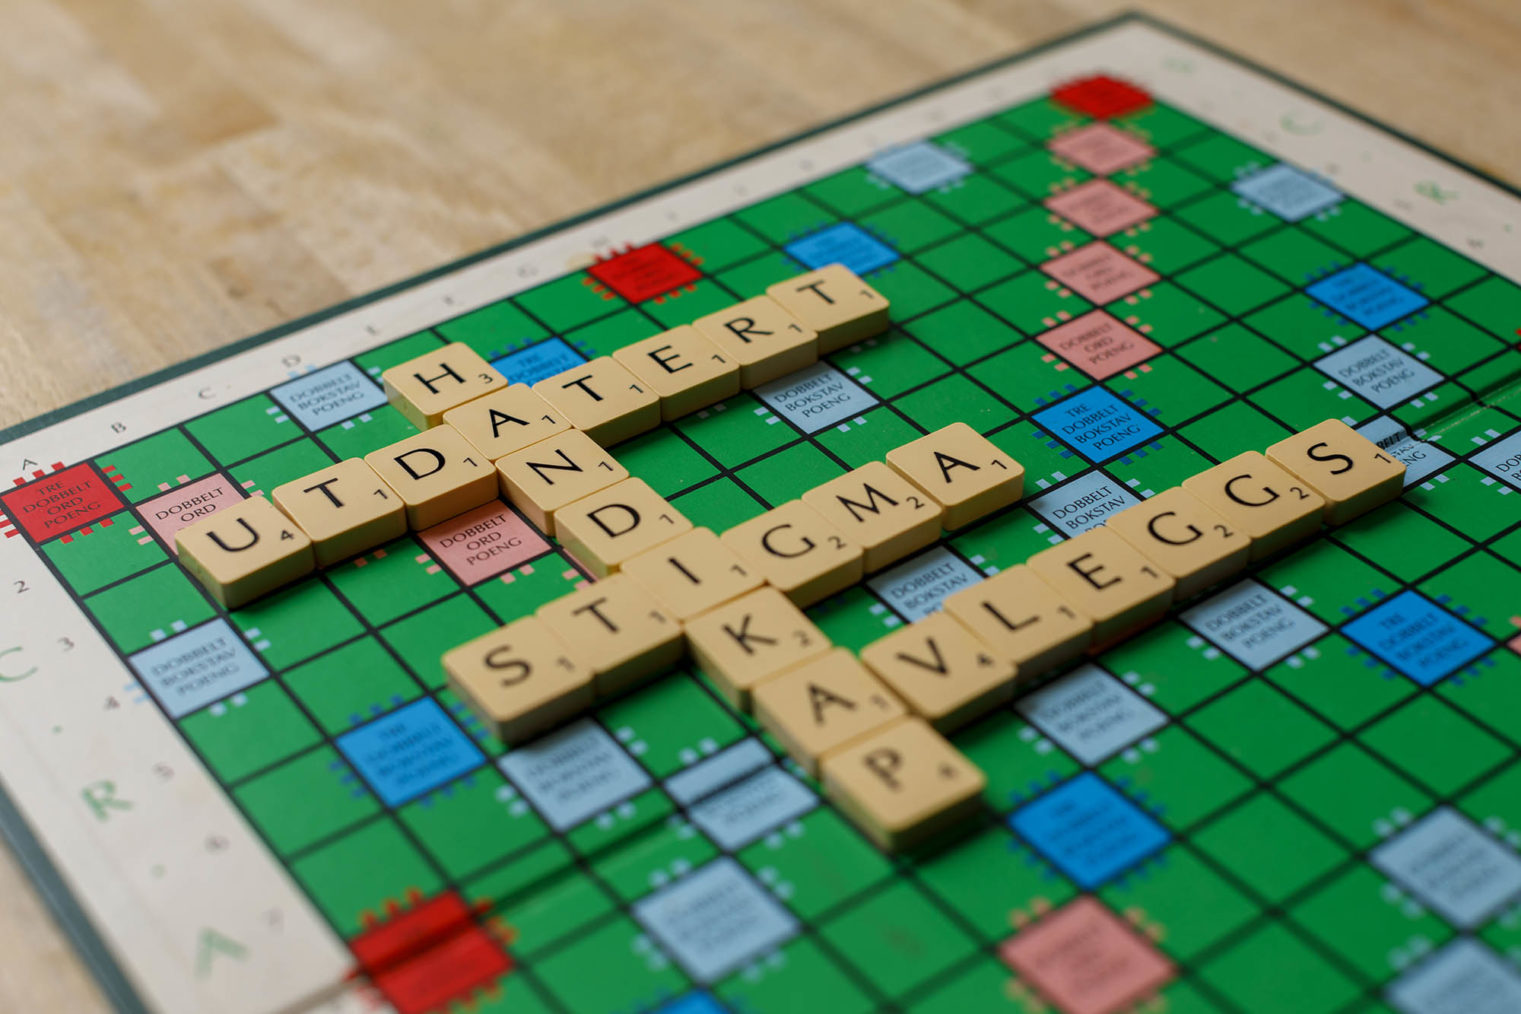 Bilde av et Scrabble-spill der ordet «handikap» er lagt i kombinasjon med ordene «utdatert», «stigma» og «avleggs».